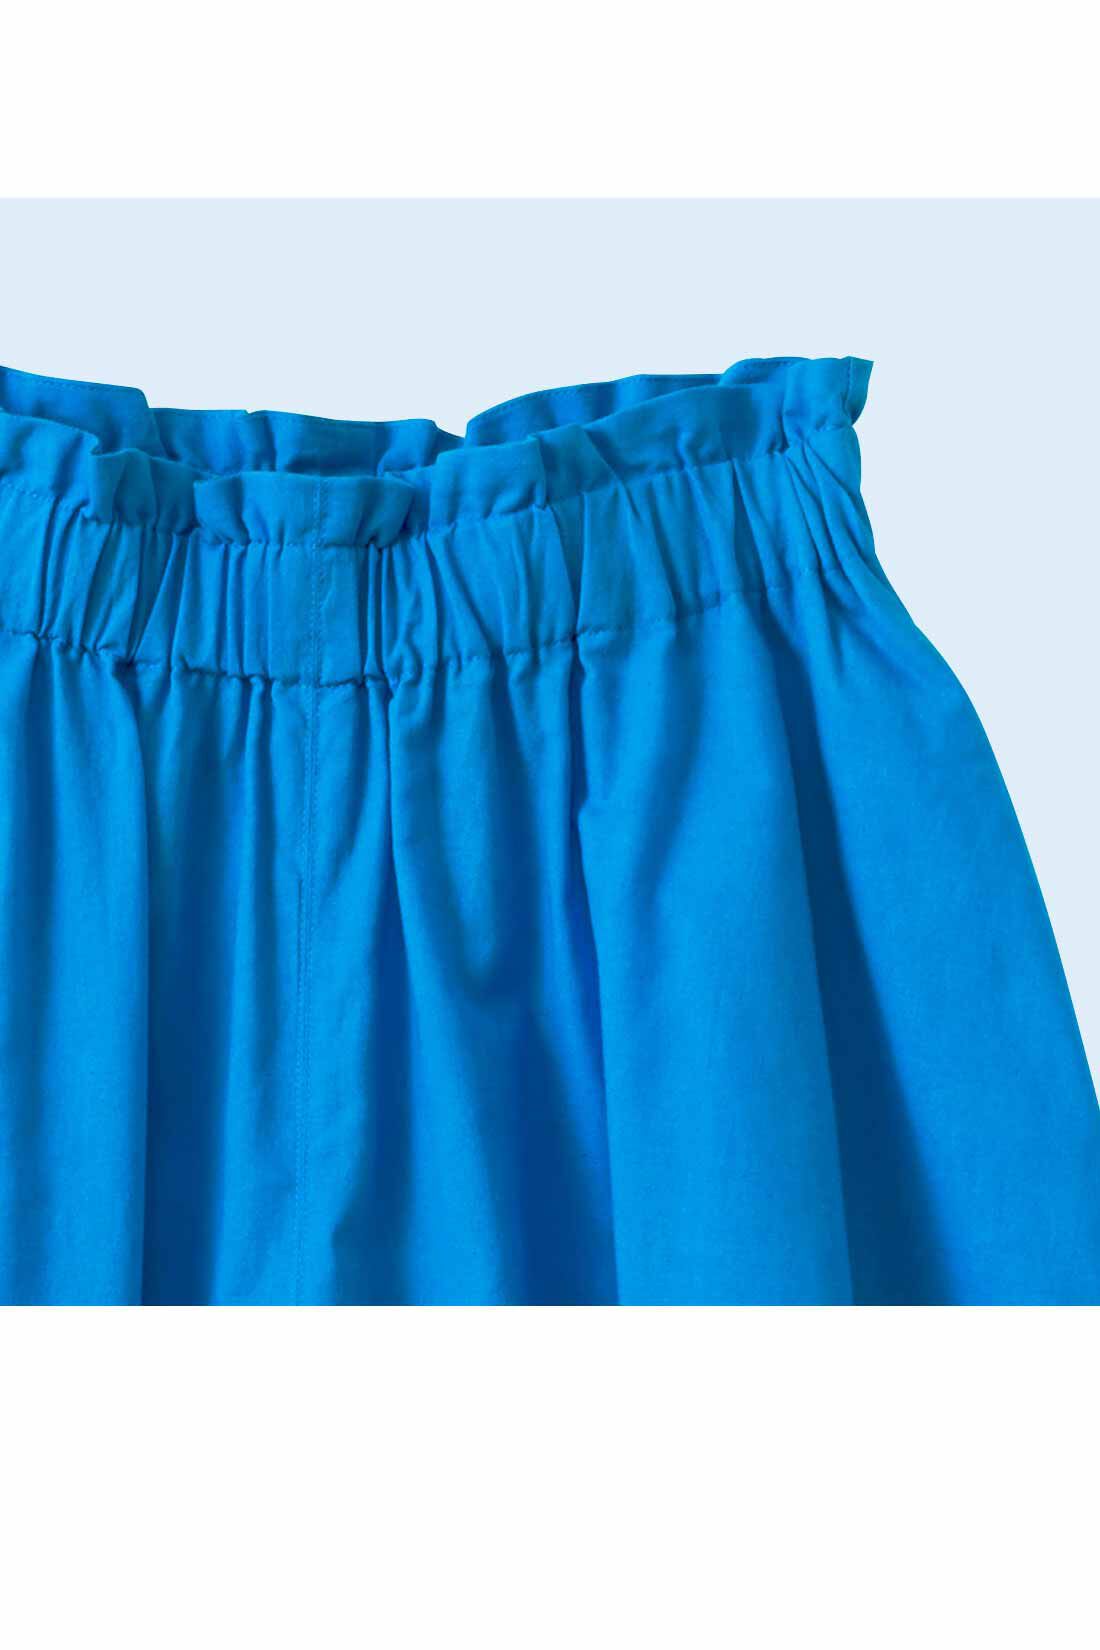 シロップ．|スカートみたいな コットンリネンのボリュームガウチョパンツ〈ブルー〉|ウエストは総ゴム仕様。フリフリデザインが◎。